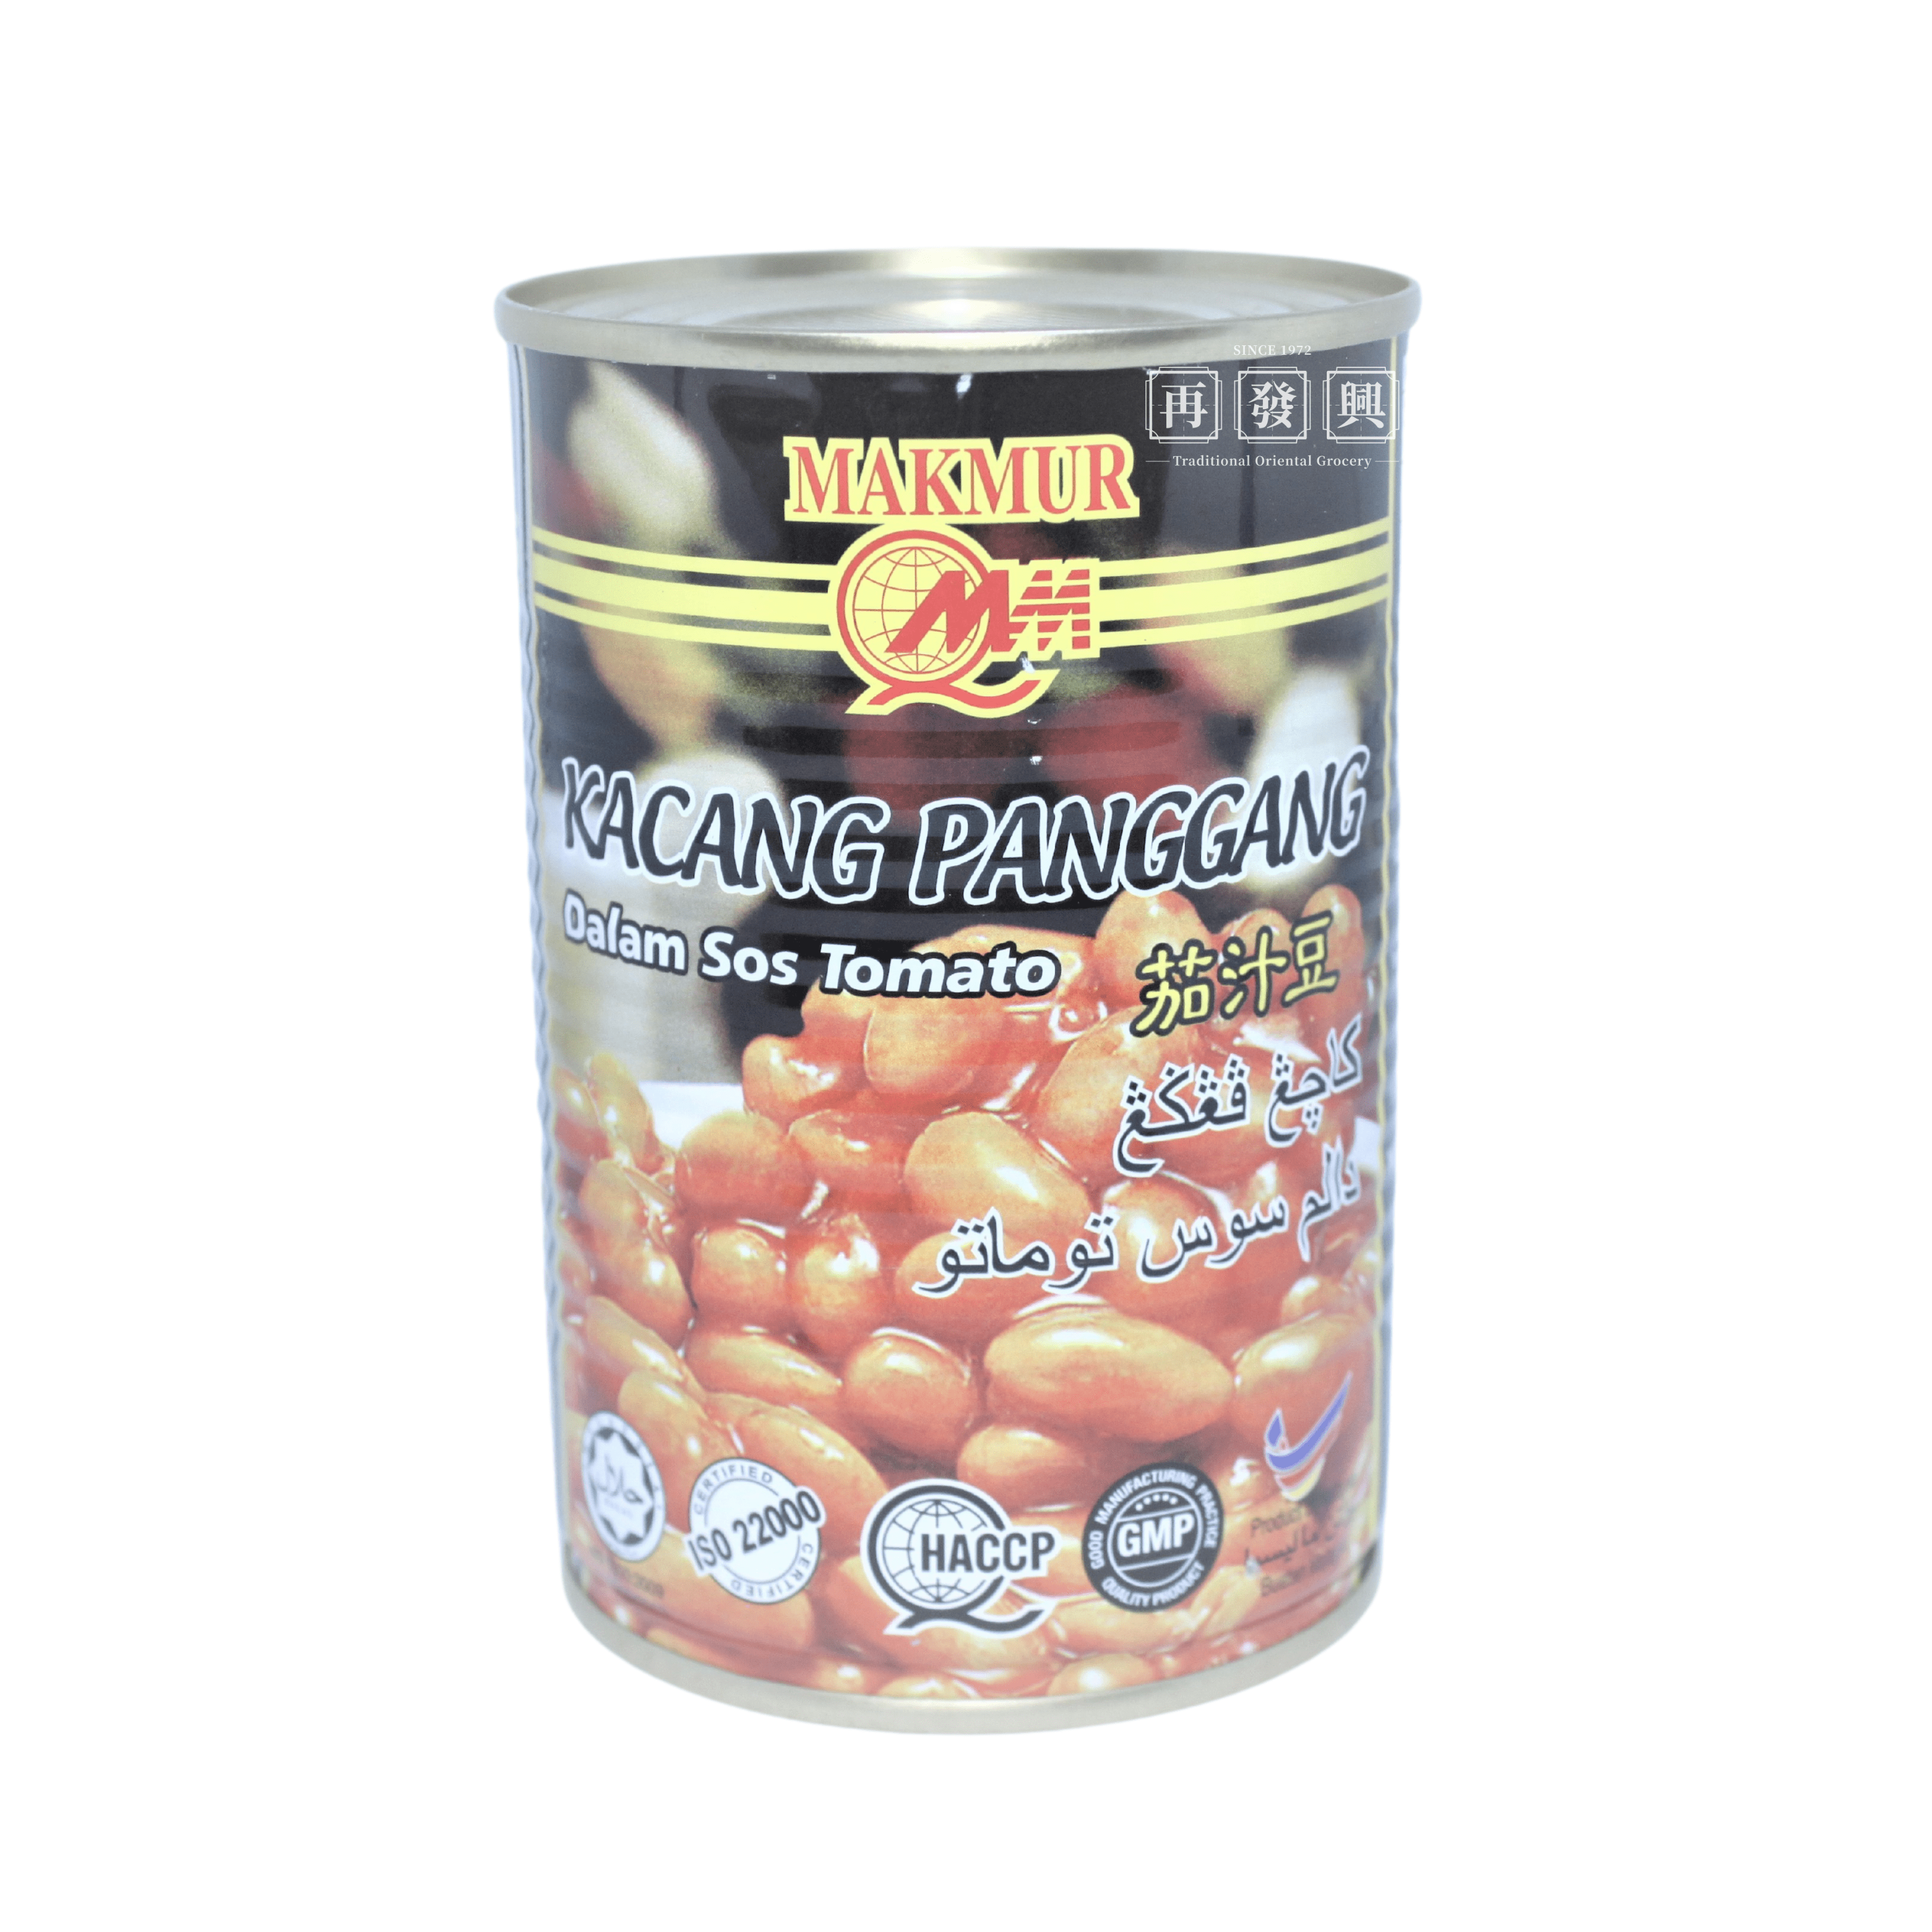 Makmur Baked Beans 425g